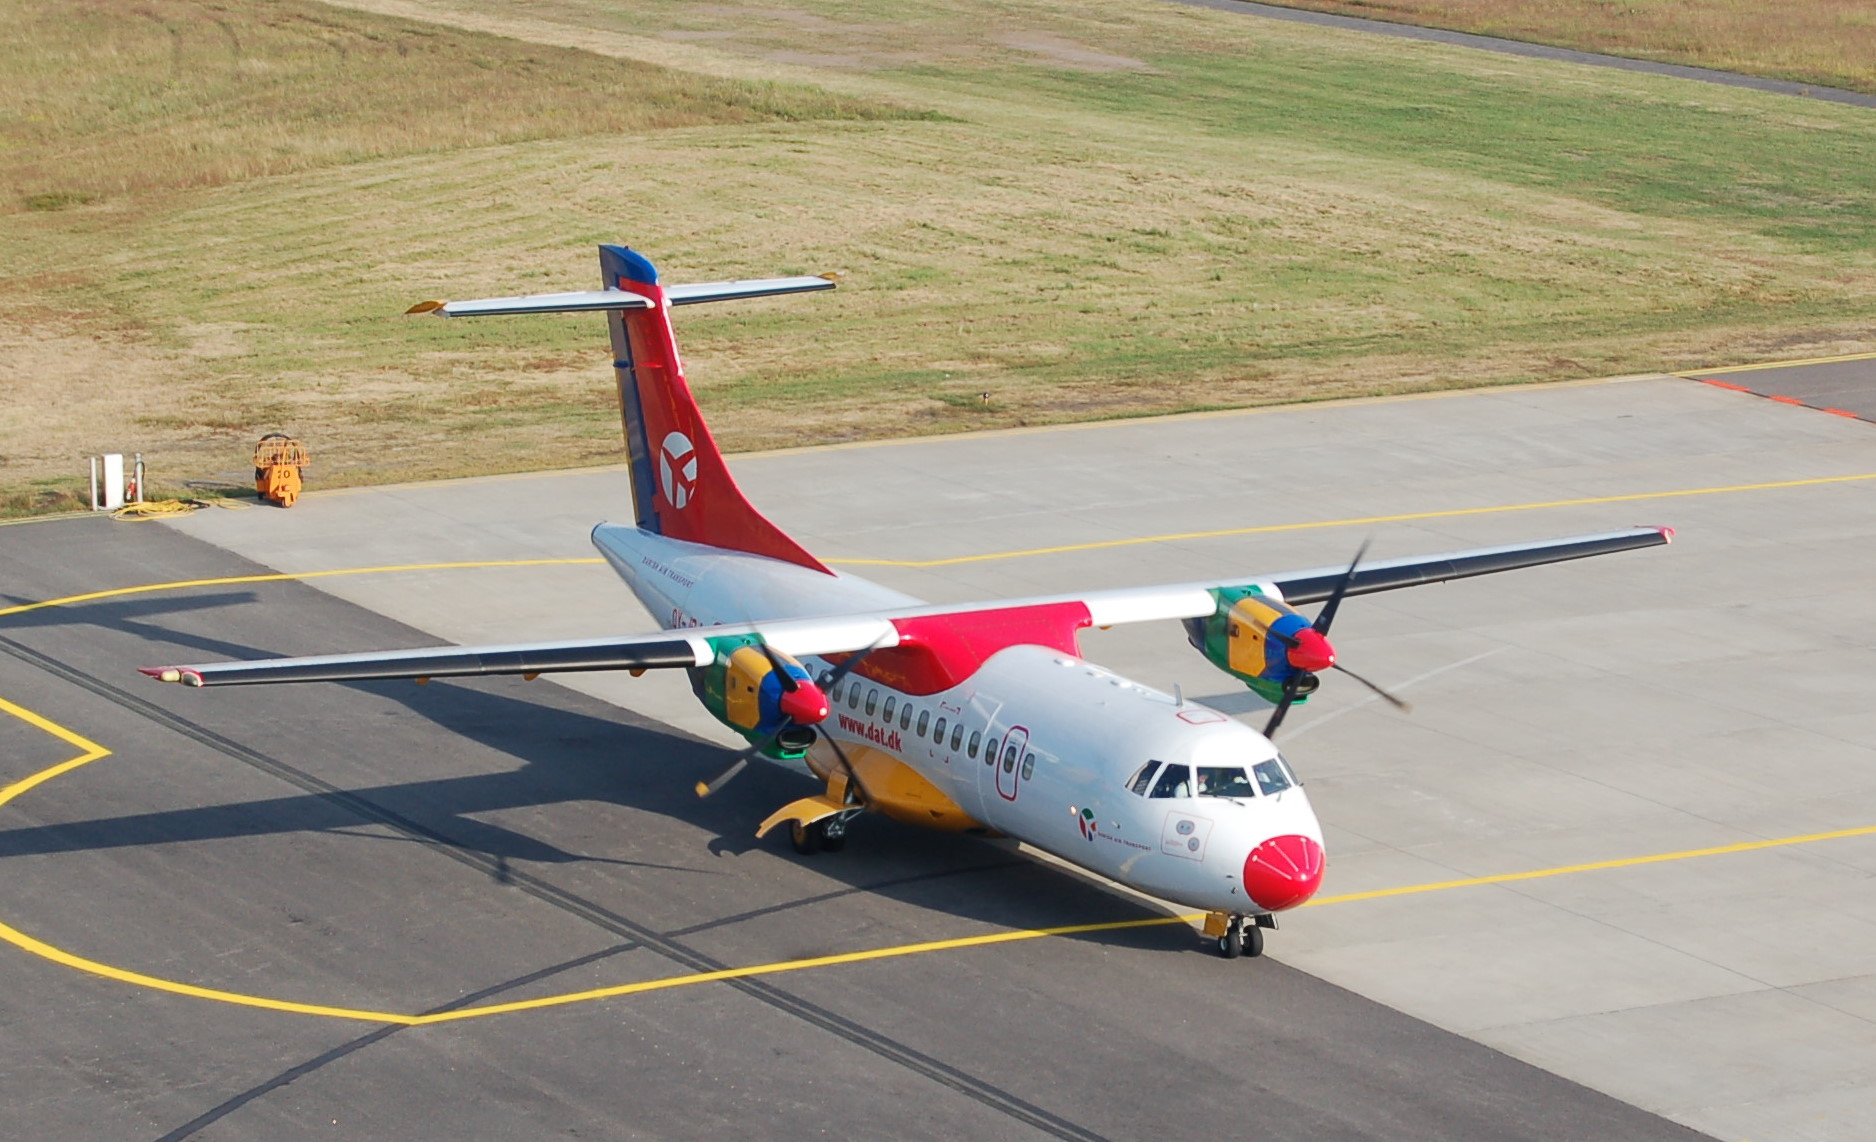 ATR ATR-42 previous